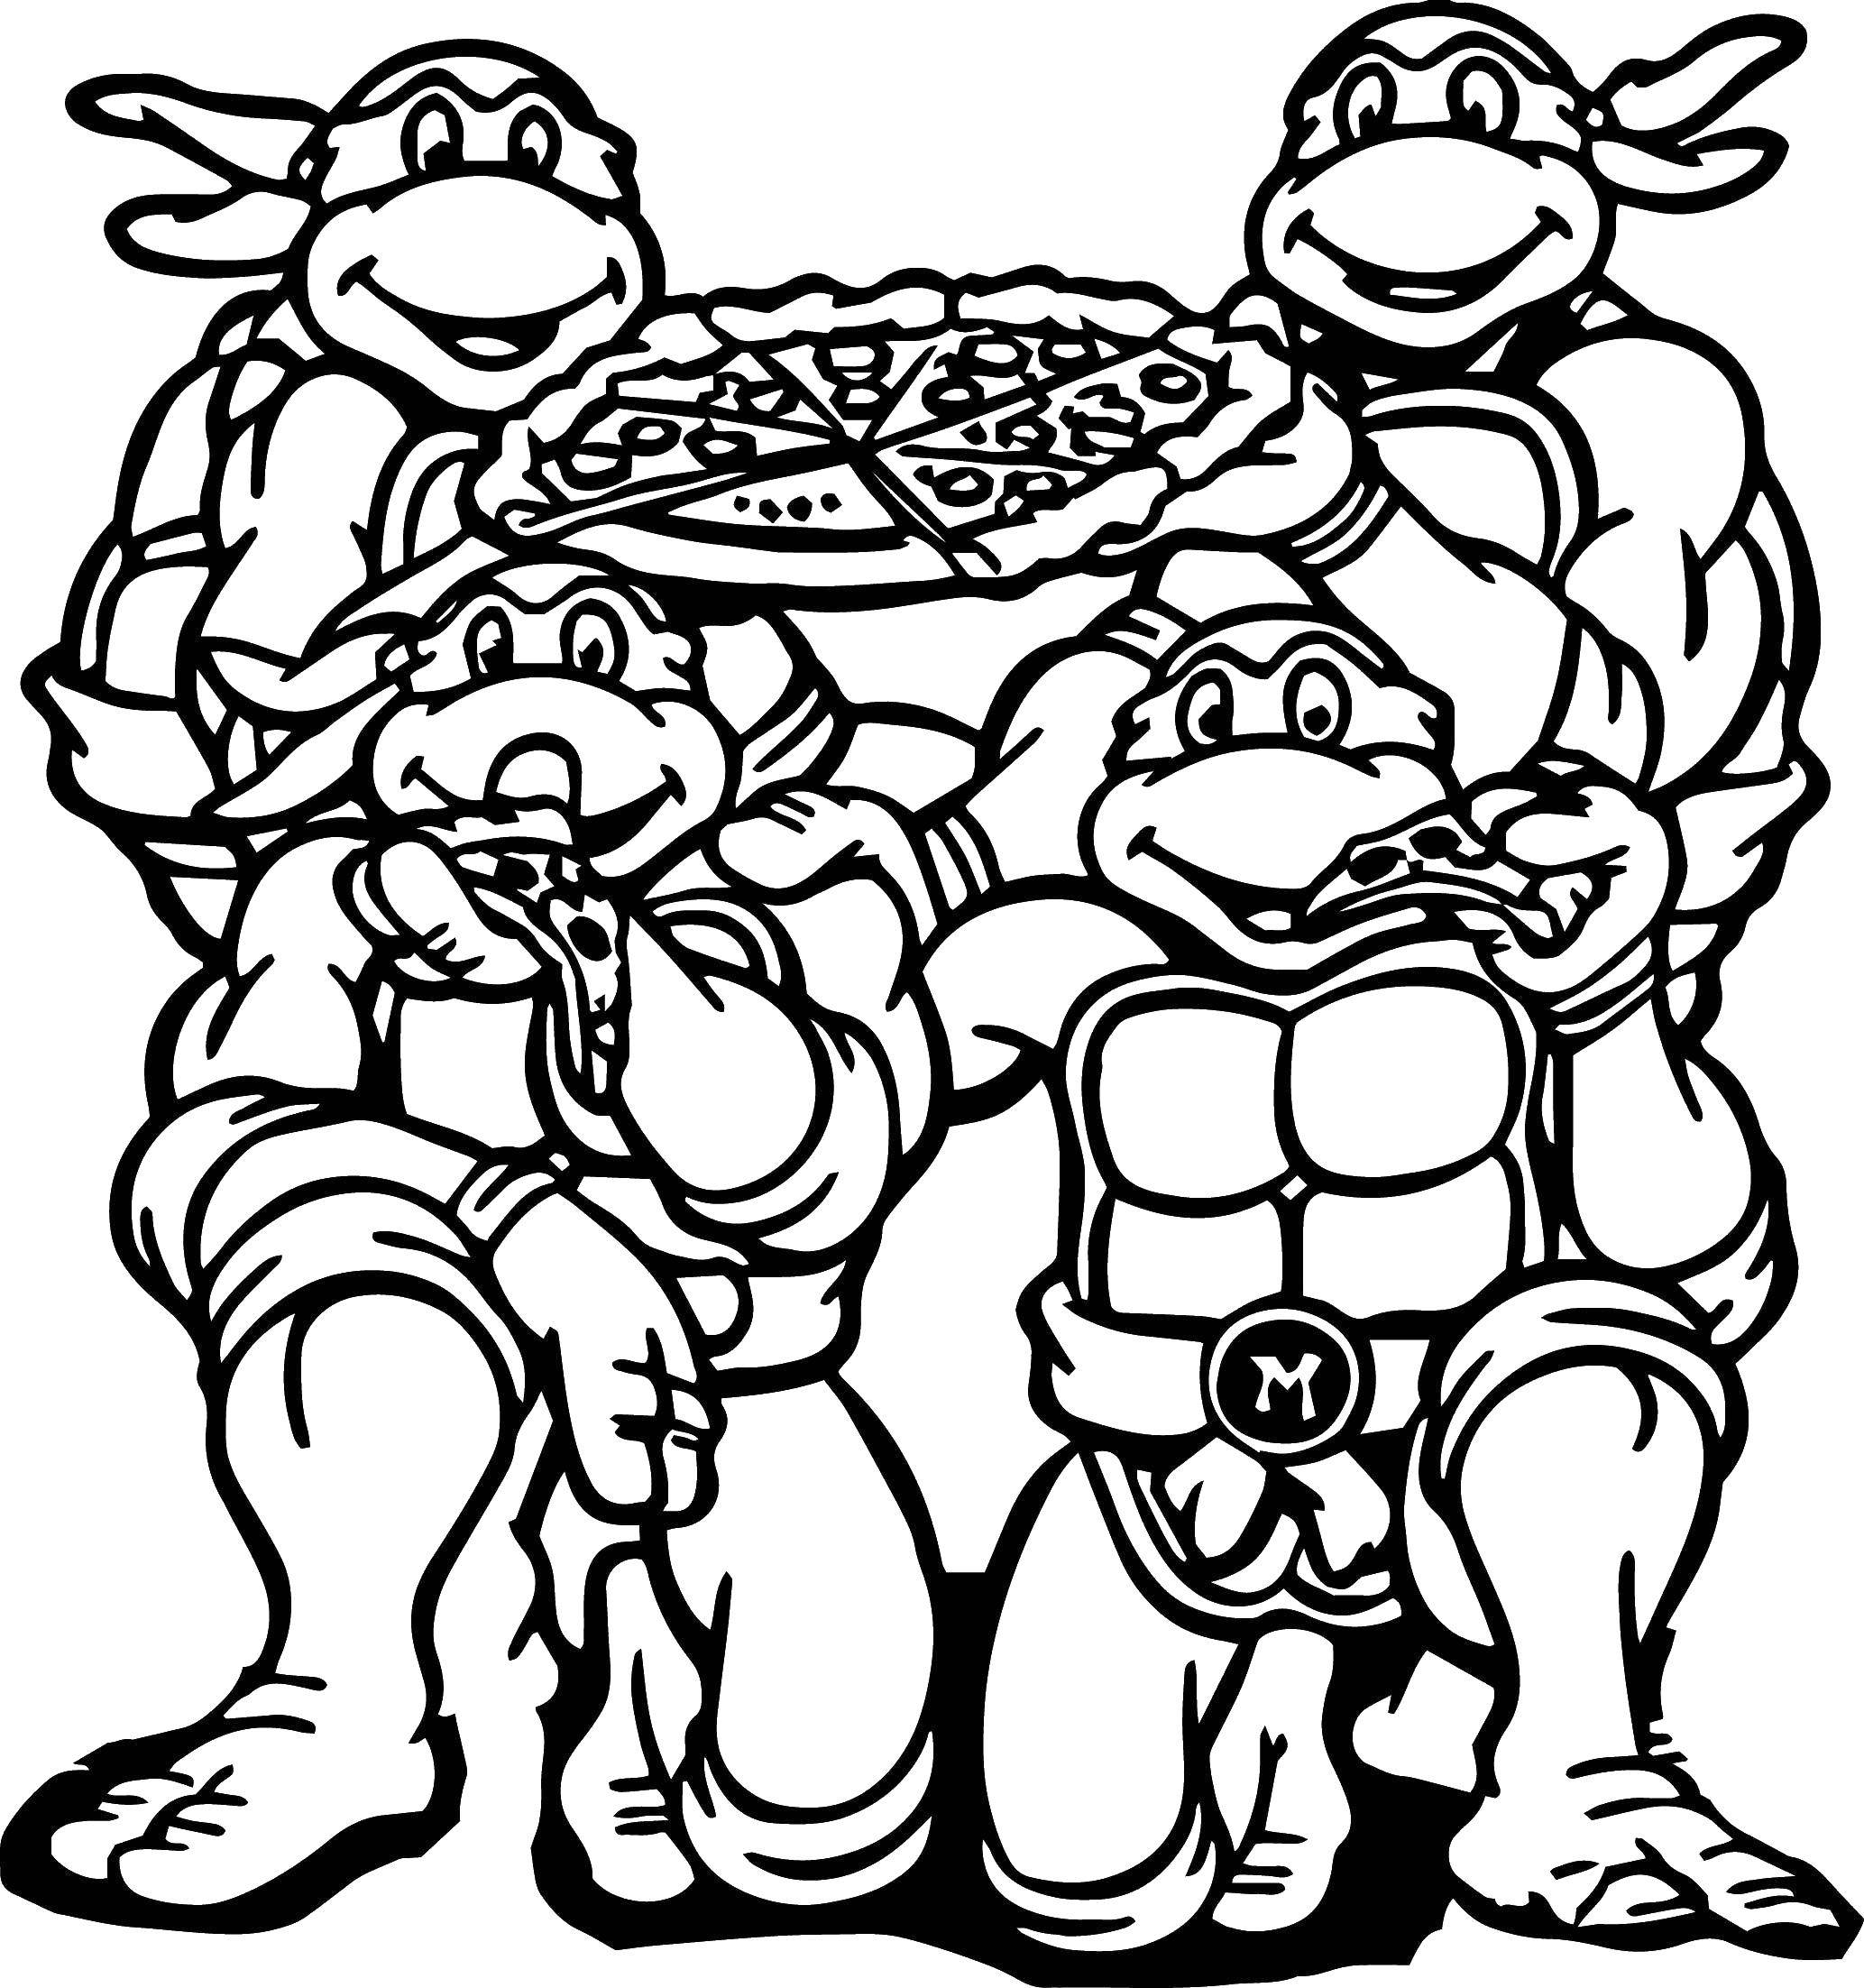 Название: Раскраска Черепашки ниндзя с пиццой. Категория: черепашки ниндзя. Теги: мультфильмы, черепашки ниндзя.